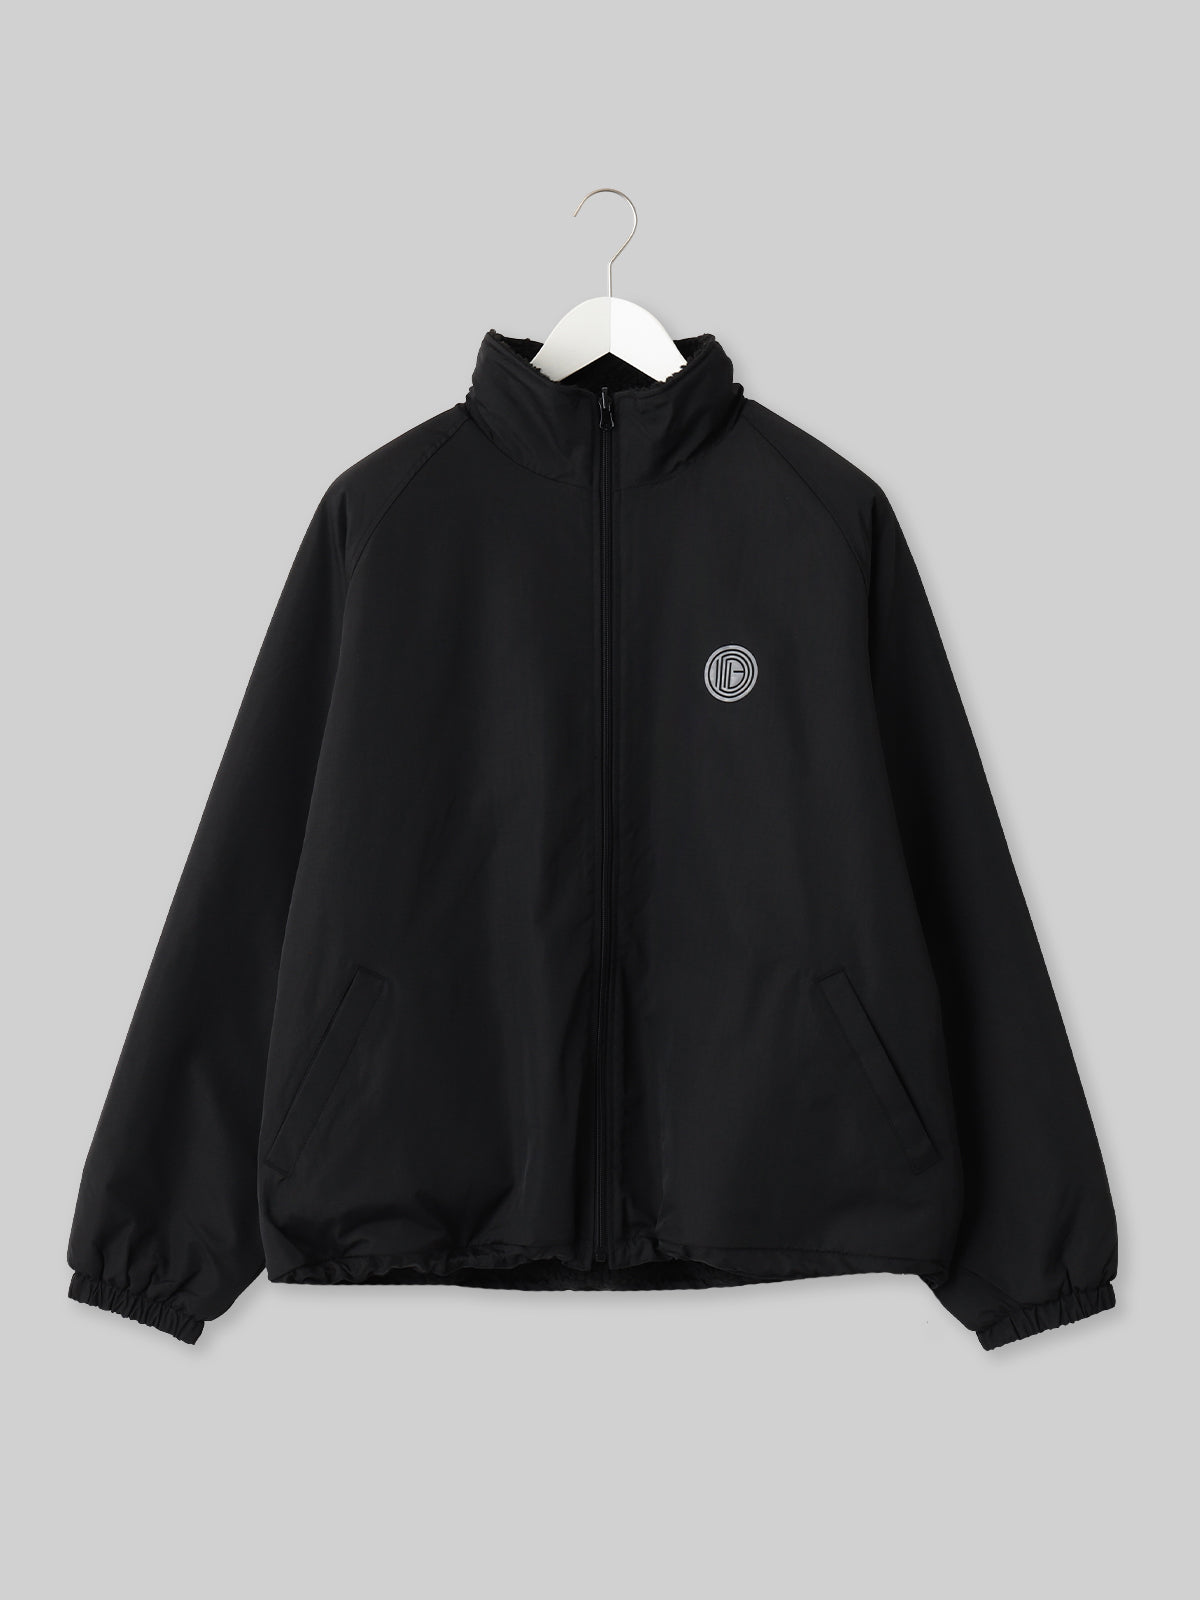 OIDAI リバーシブルボアジャケット サークルロゴ ブラック